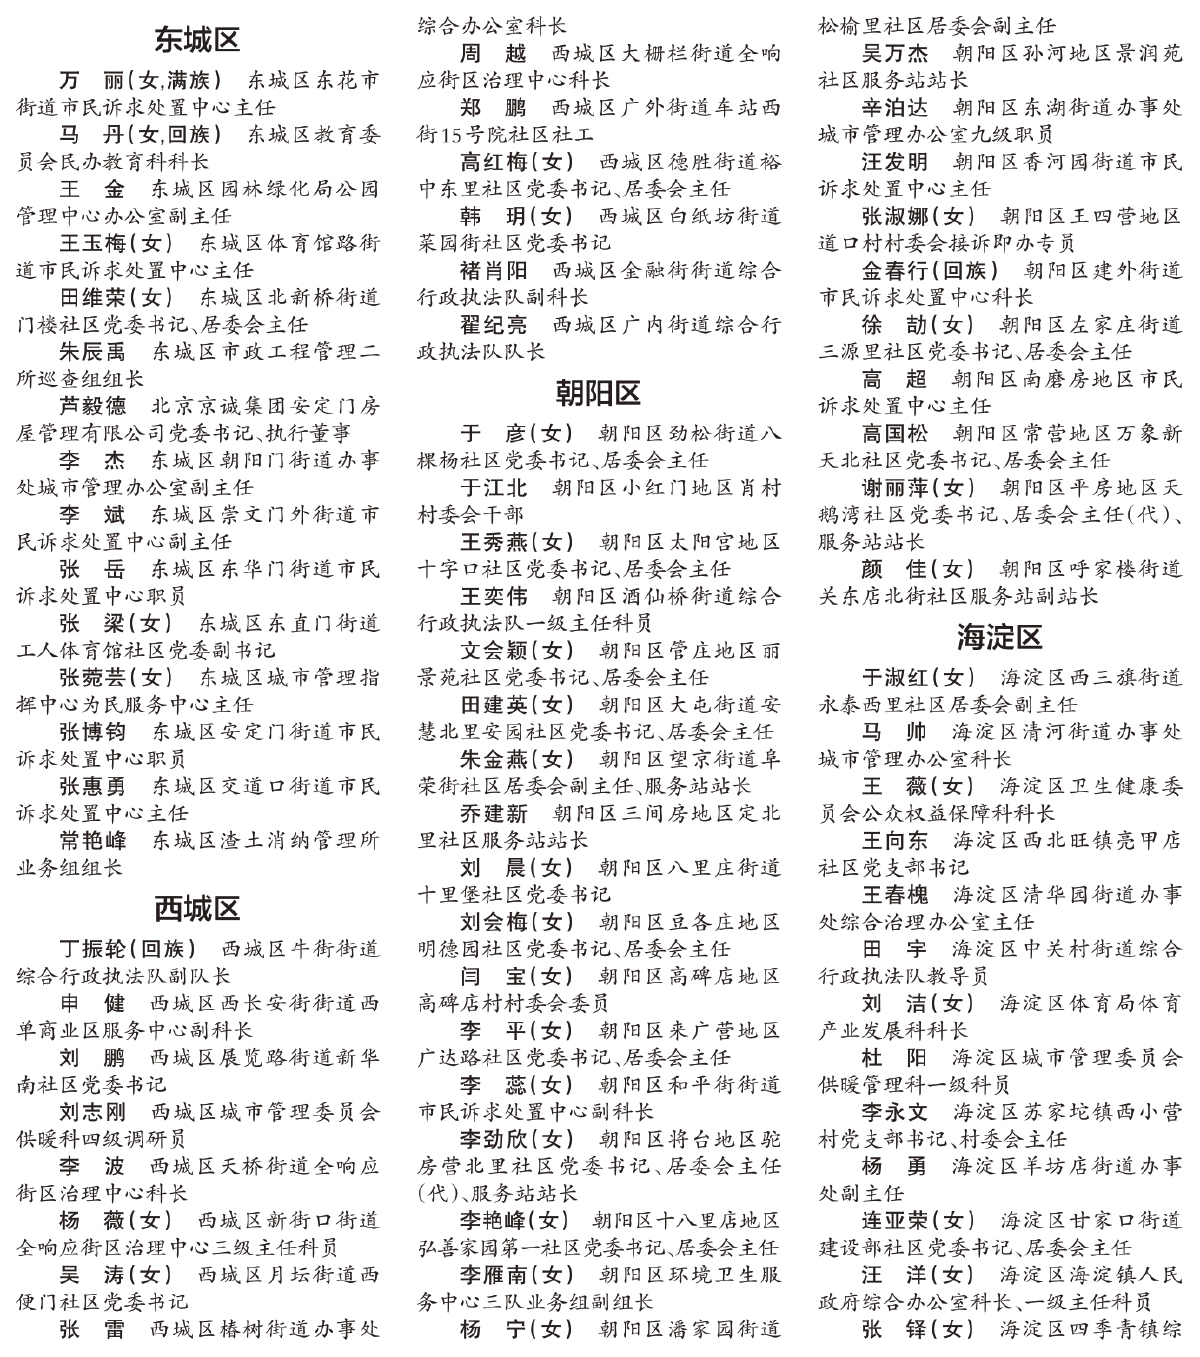 北京市接诉即办工作先进个人名单（共399名）.jpg